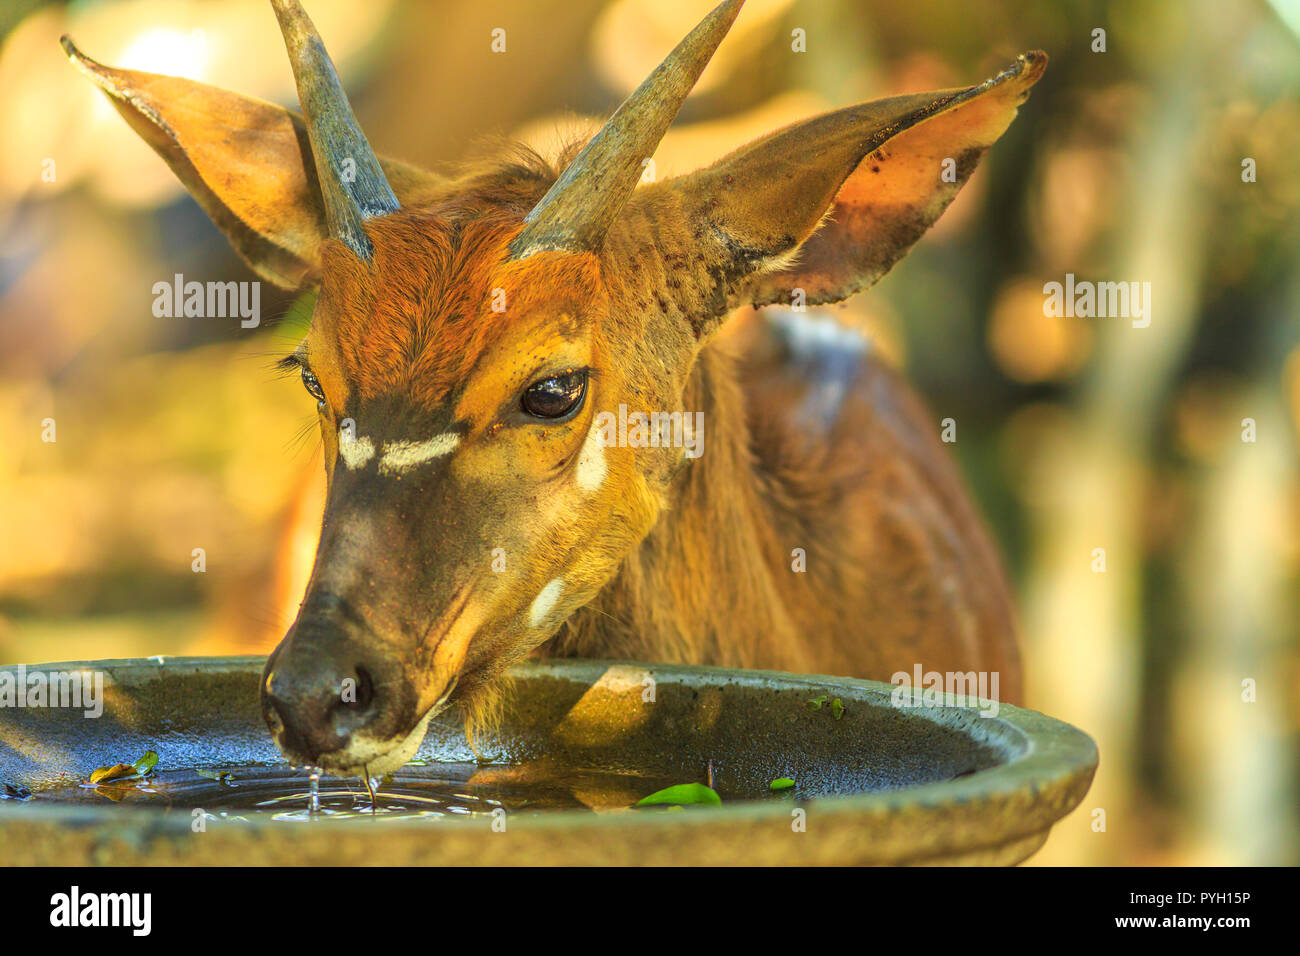 Nahaufnahme des jungen Nyala männlich, ein antilopenarten, Getränke Wasser in Tembe Elephant Park, Südafrika. Game Drive Safari. Tragelaphus Angasii Arten. Vorderansicht. Stockfoto